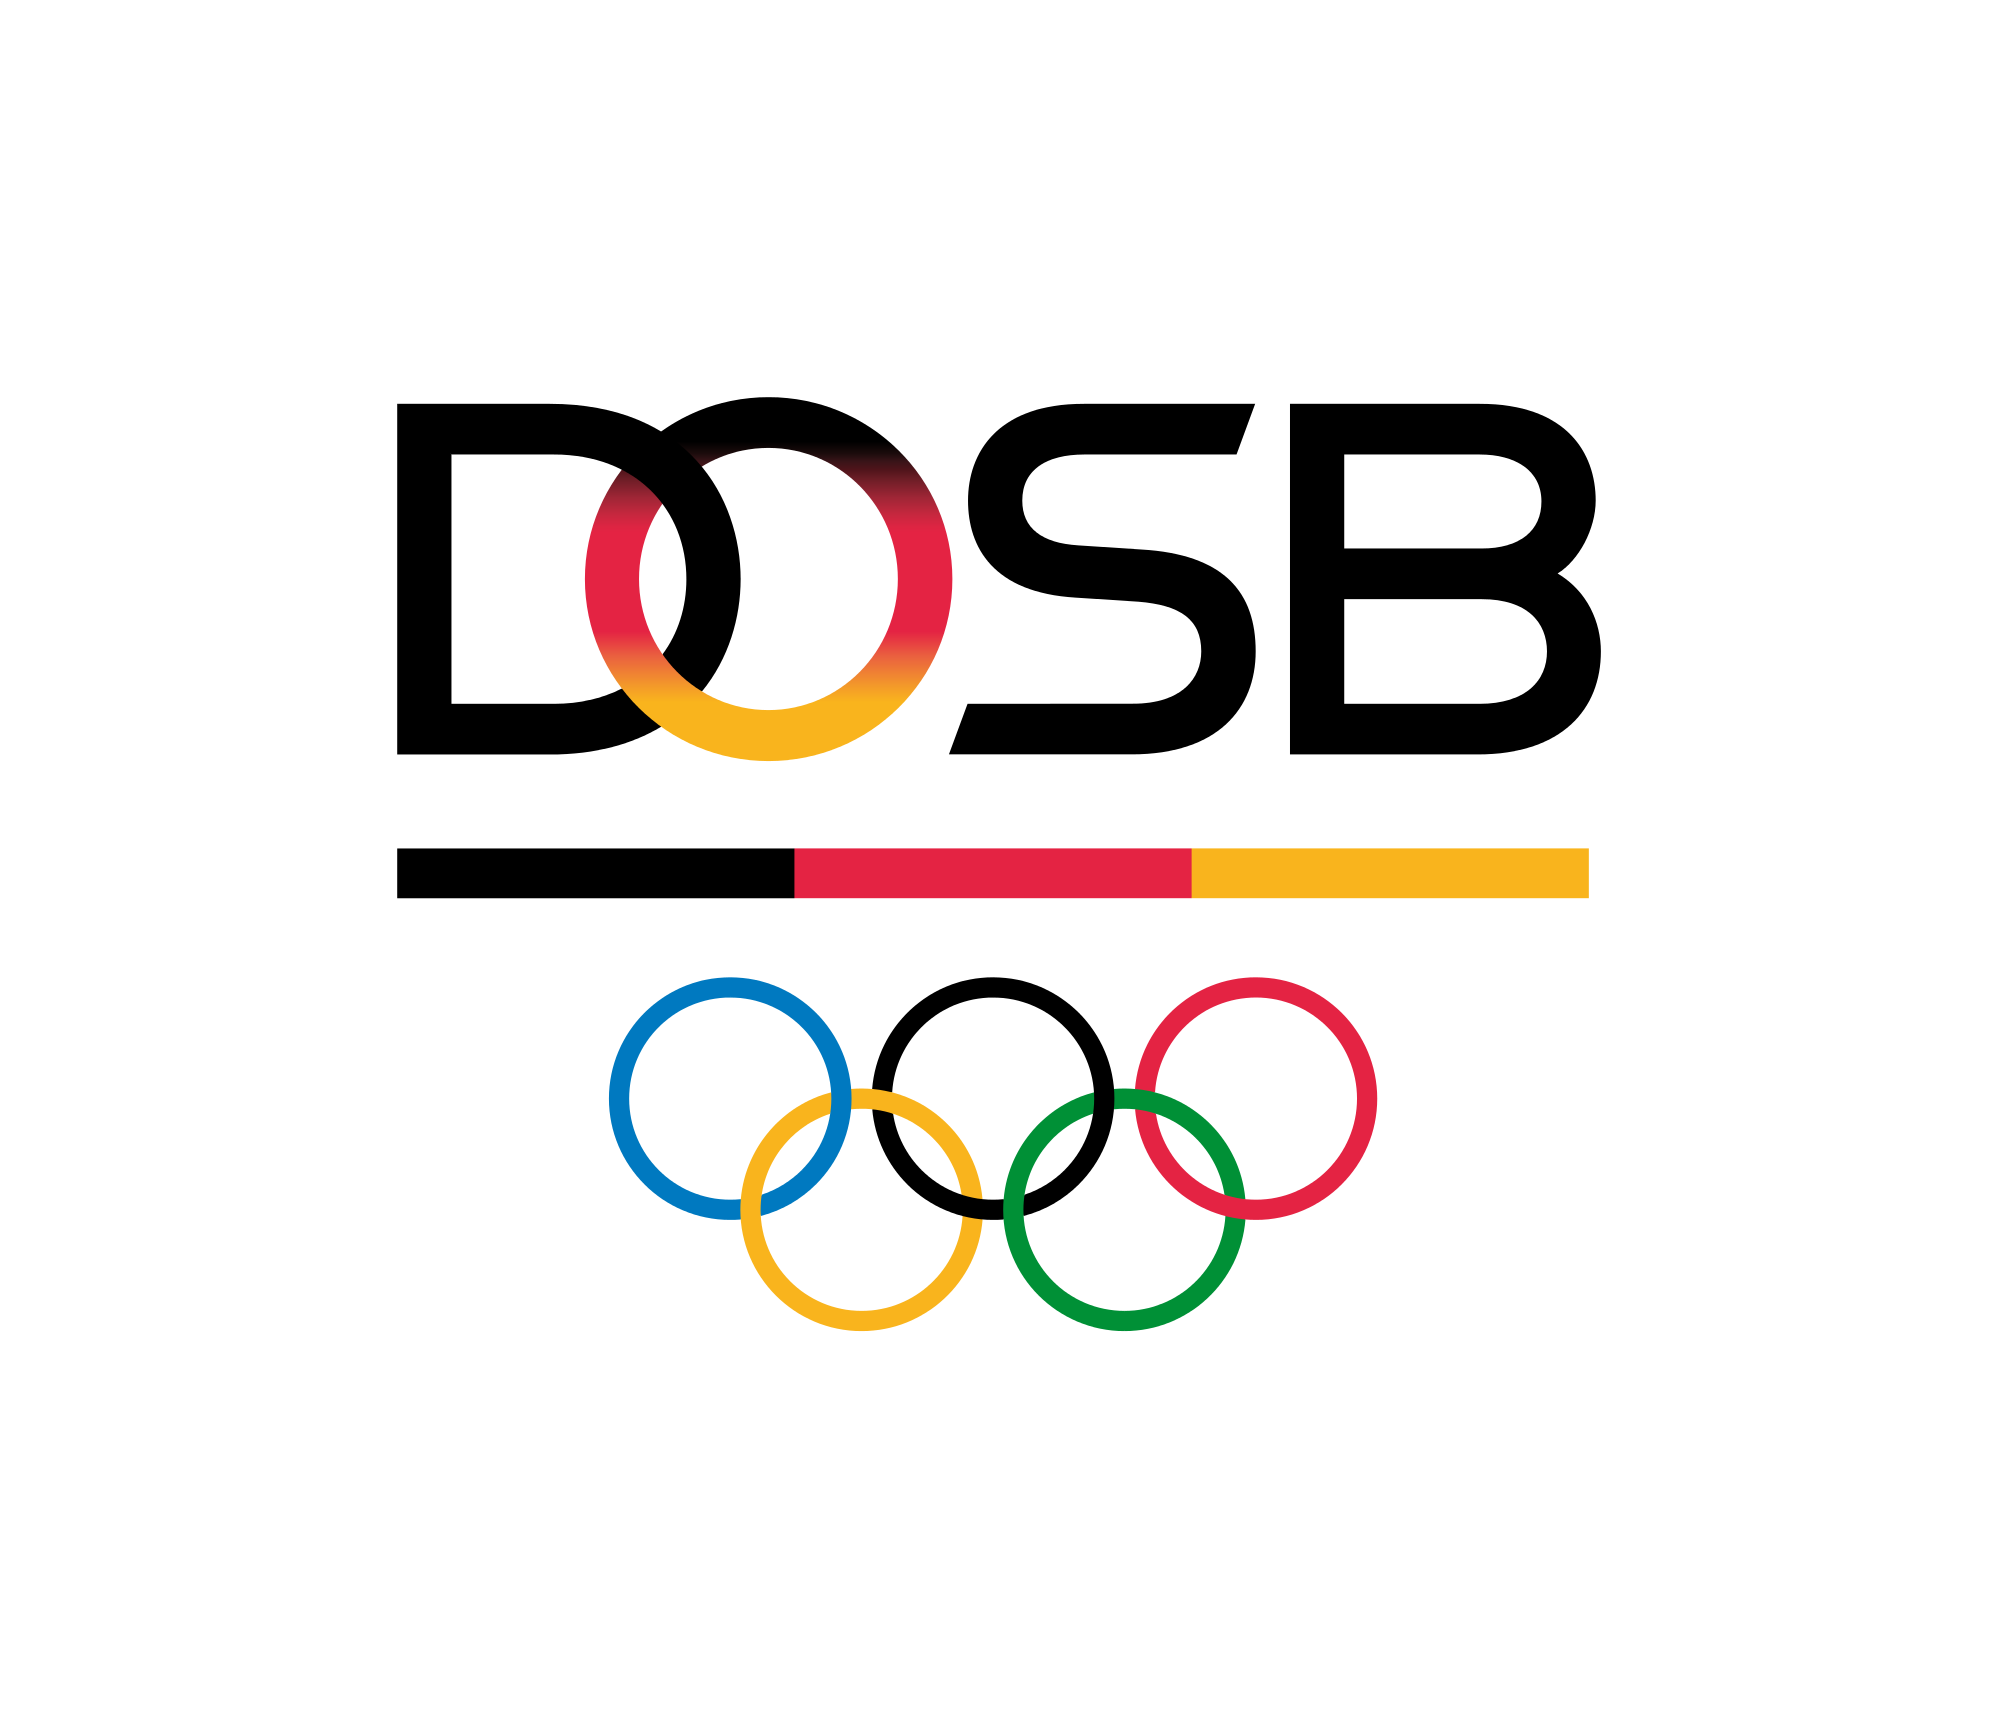 Datei:Logo Deutscher Olympisc